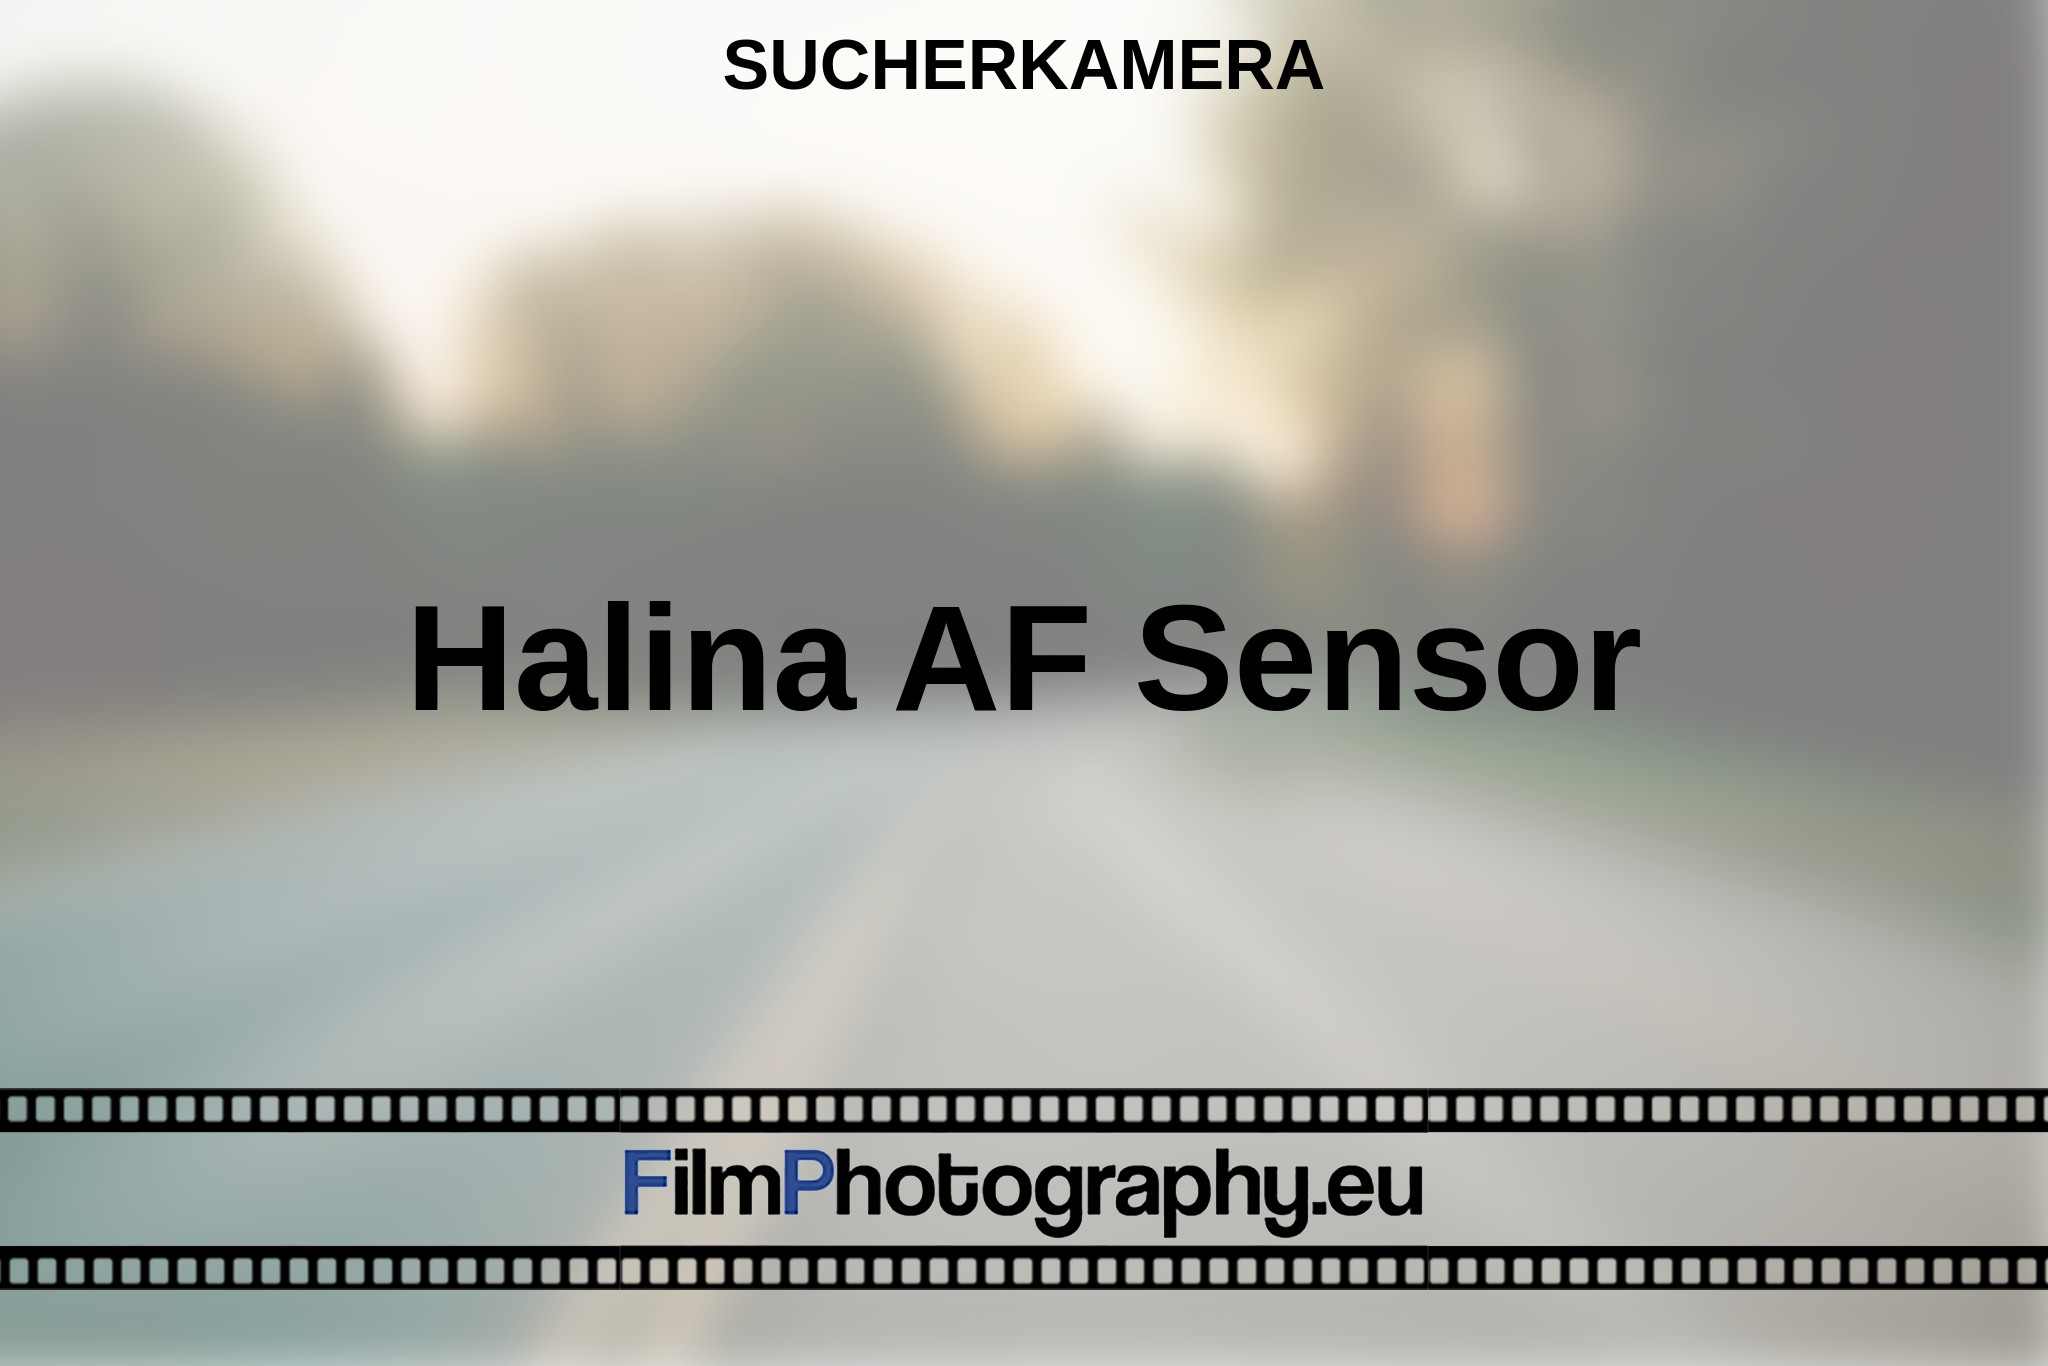 halina-af-sensor-sucherkamera-bnv.jpg